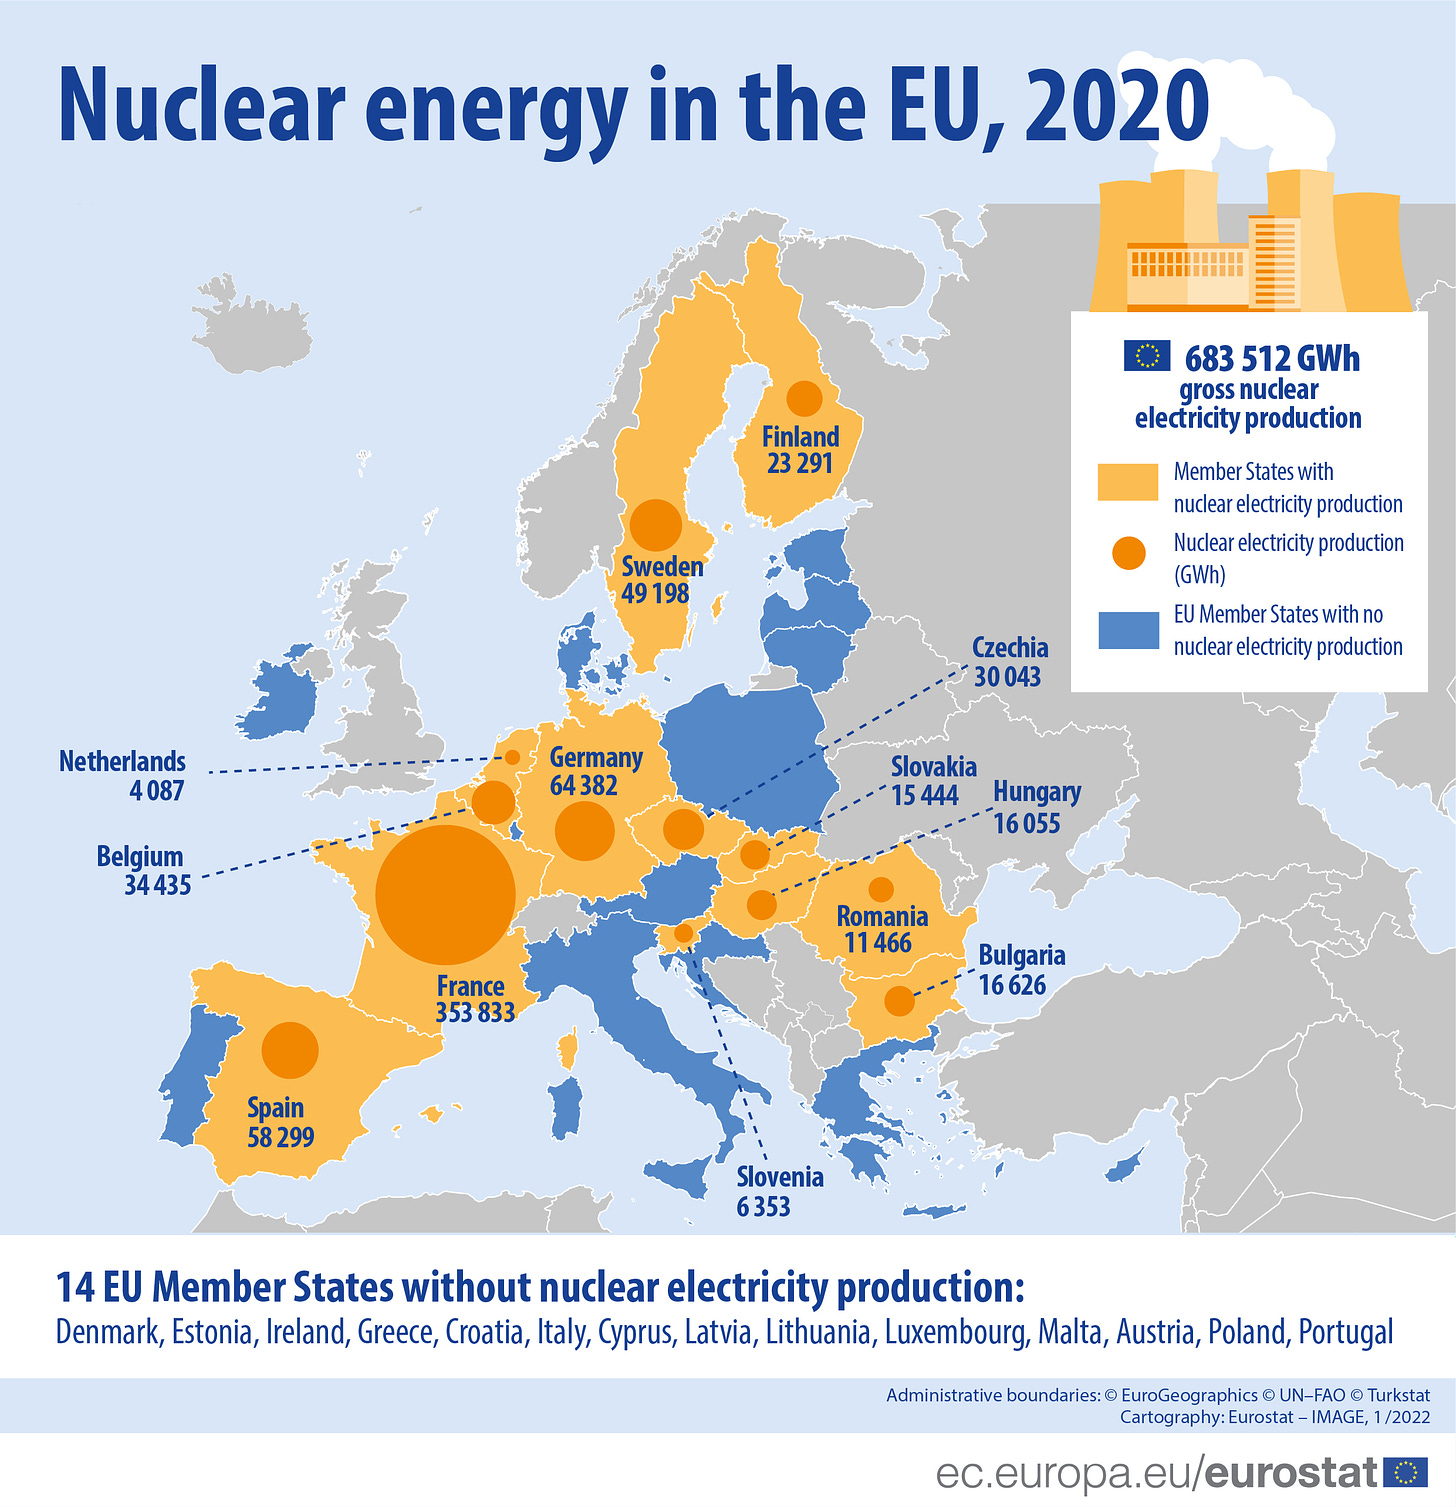 Une grande partie des espoirs reposent sur le nucléaire, qui représente 25 % de la production électrique dans l’Union européenne.